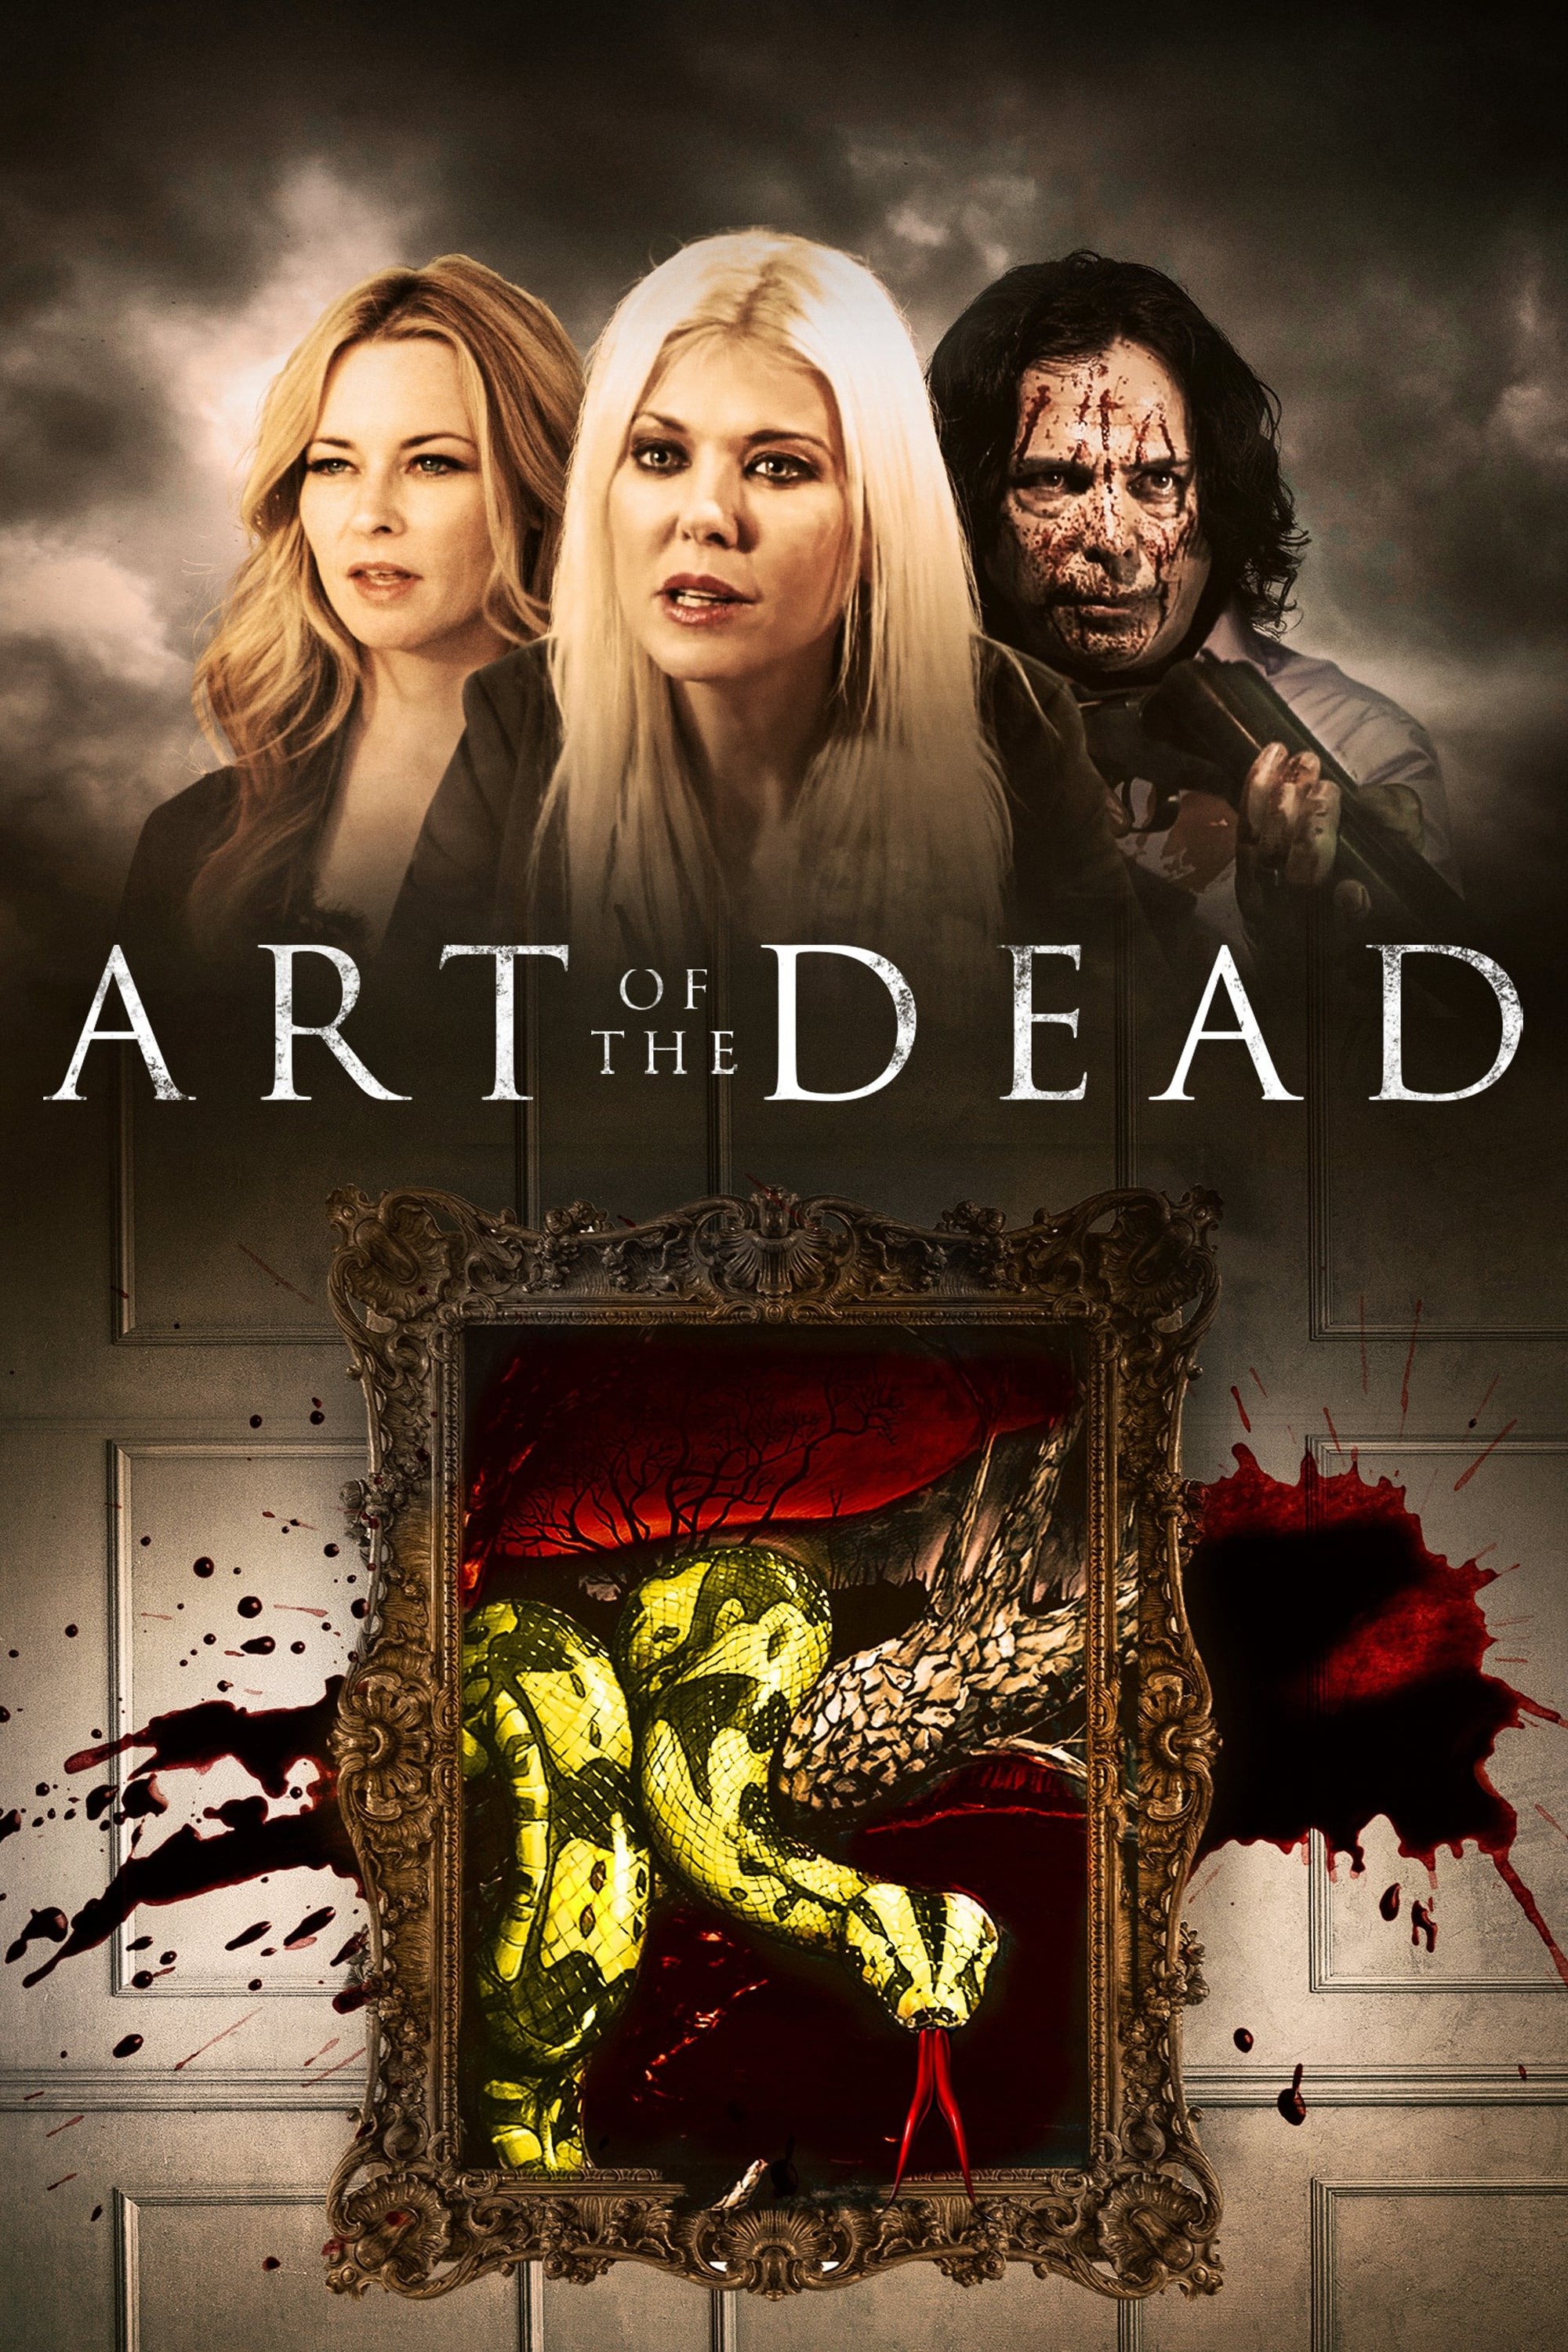 دانلود فیلم Art of the Dead 2019